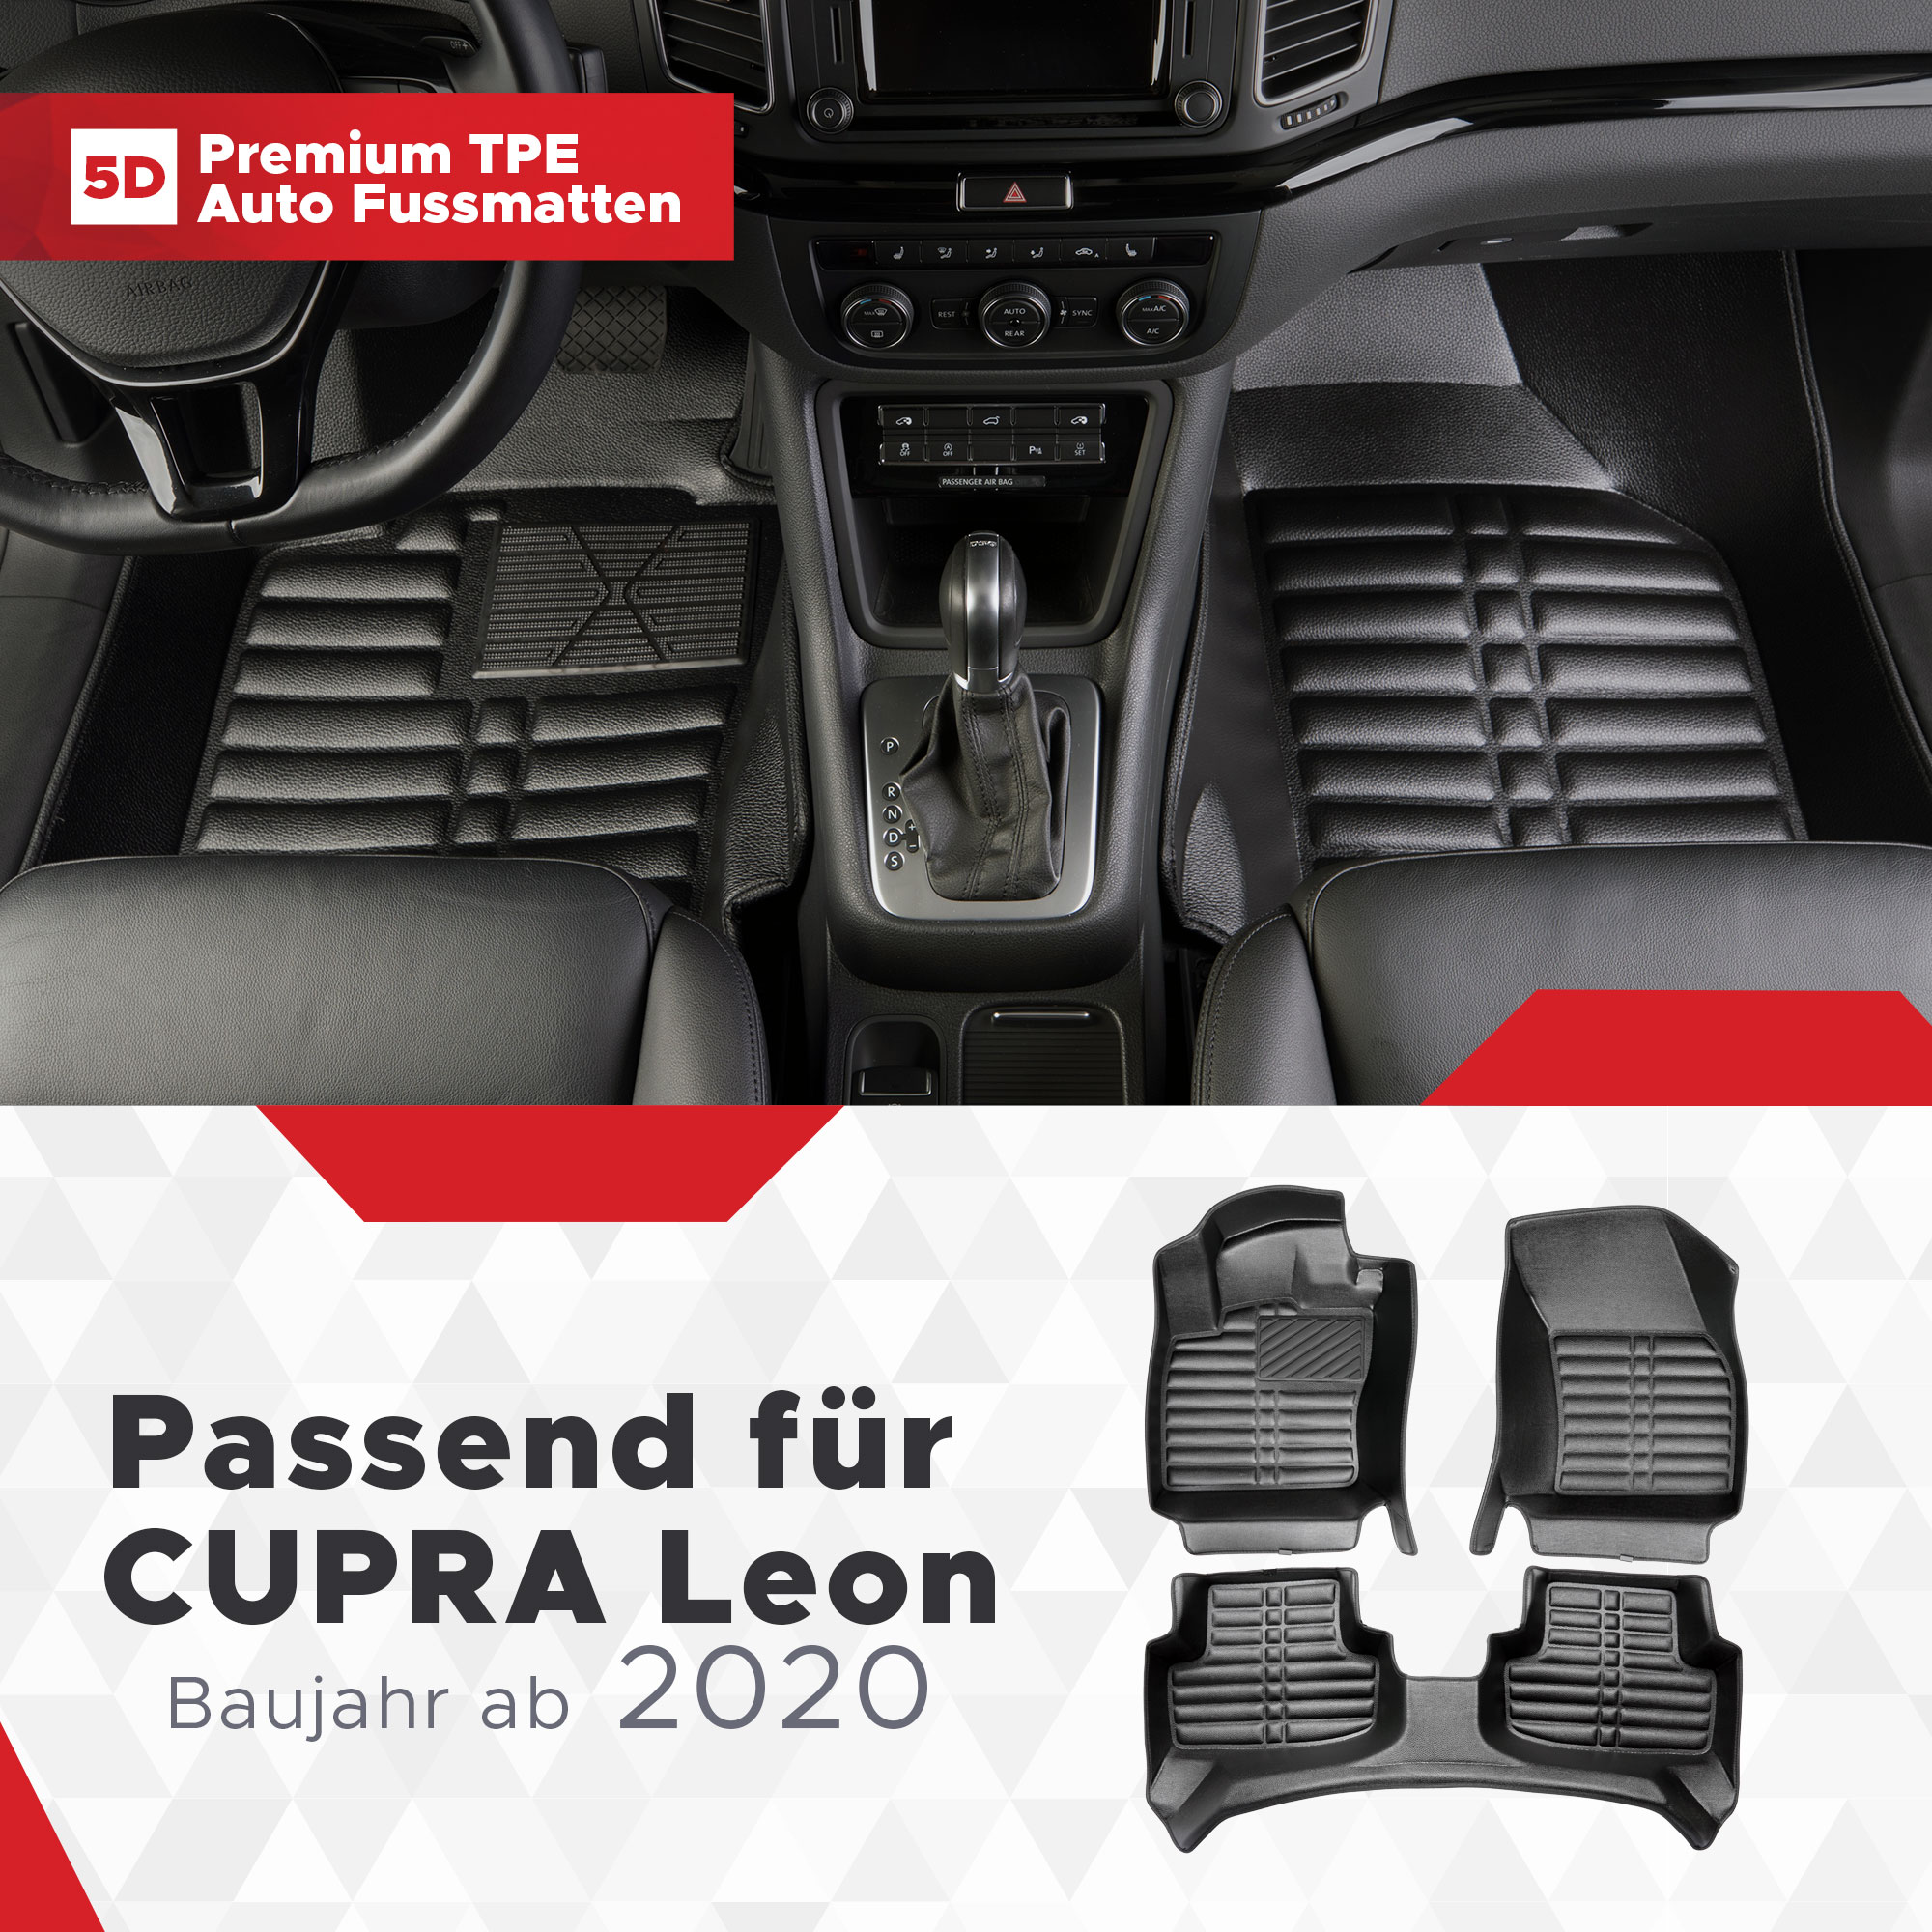 5D Premium Auto Fussmatten TPE Set passend für CUPRA Leon Baujahr ab 2020